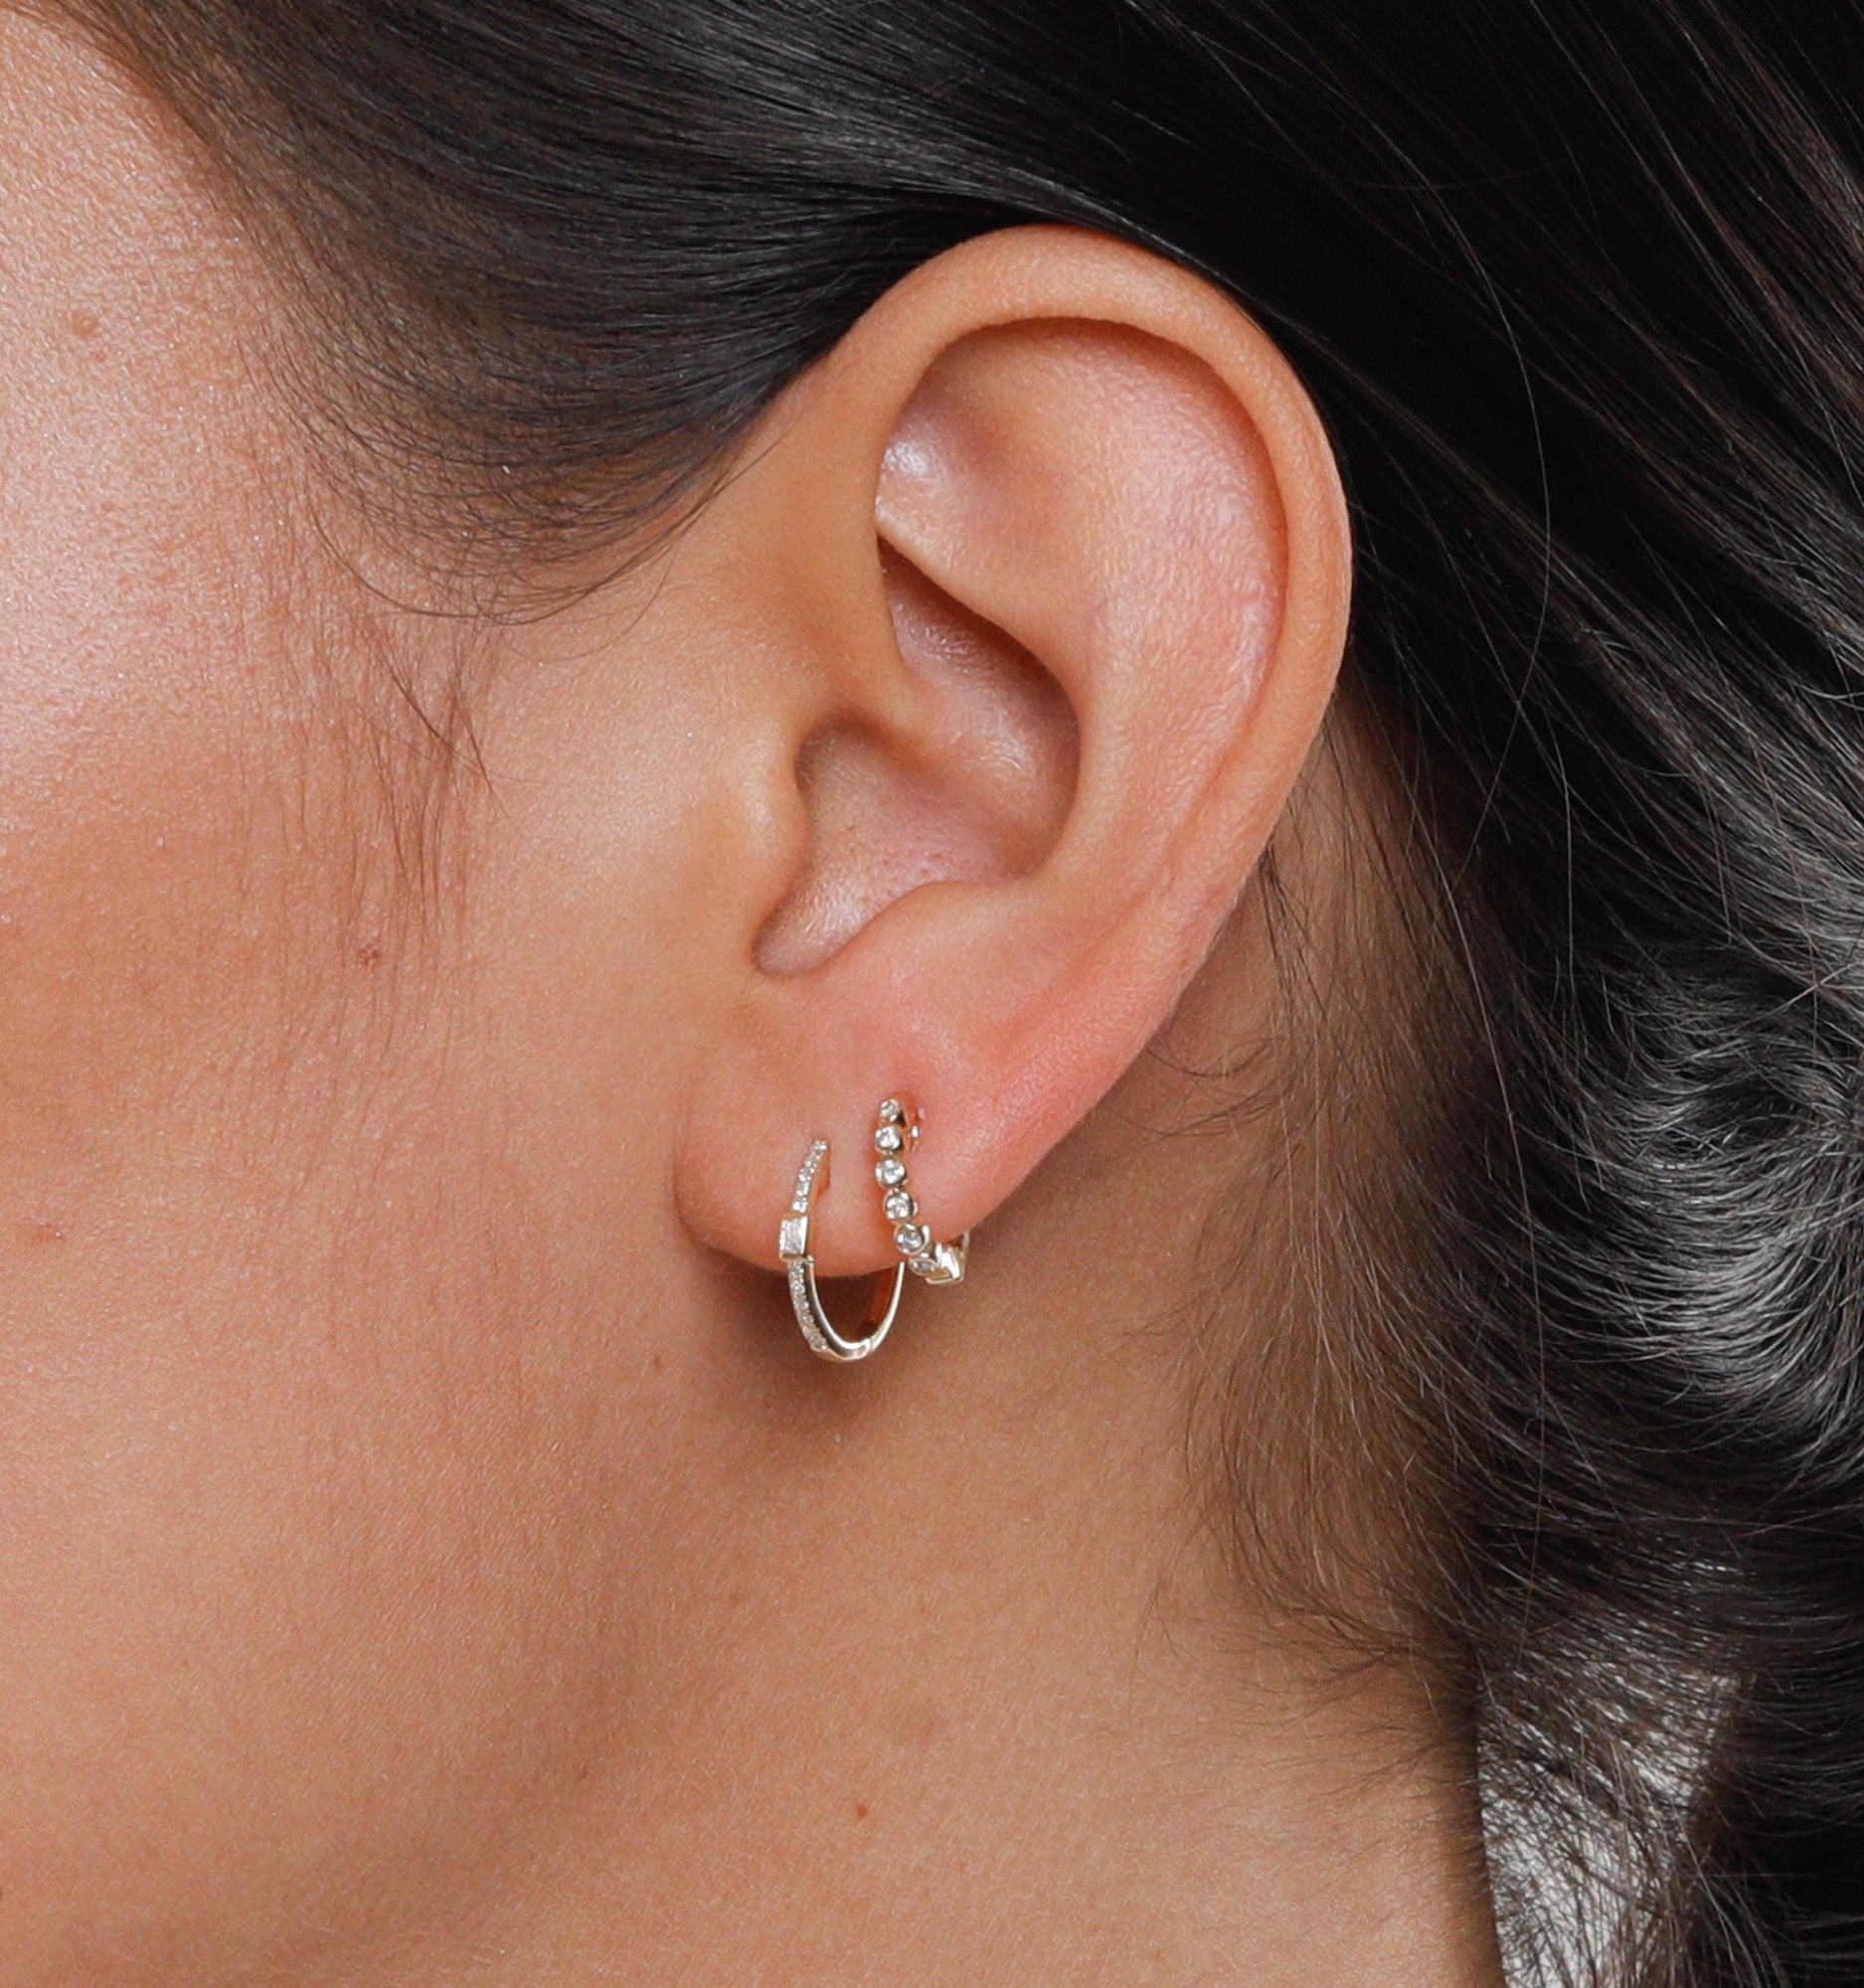 Baguette Diamond Hoop Earrings